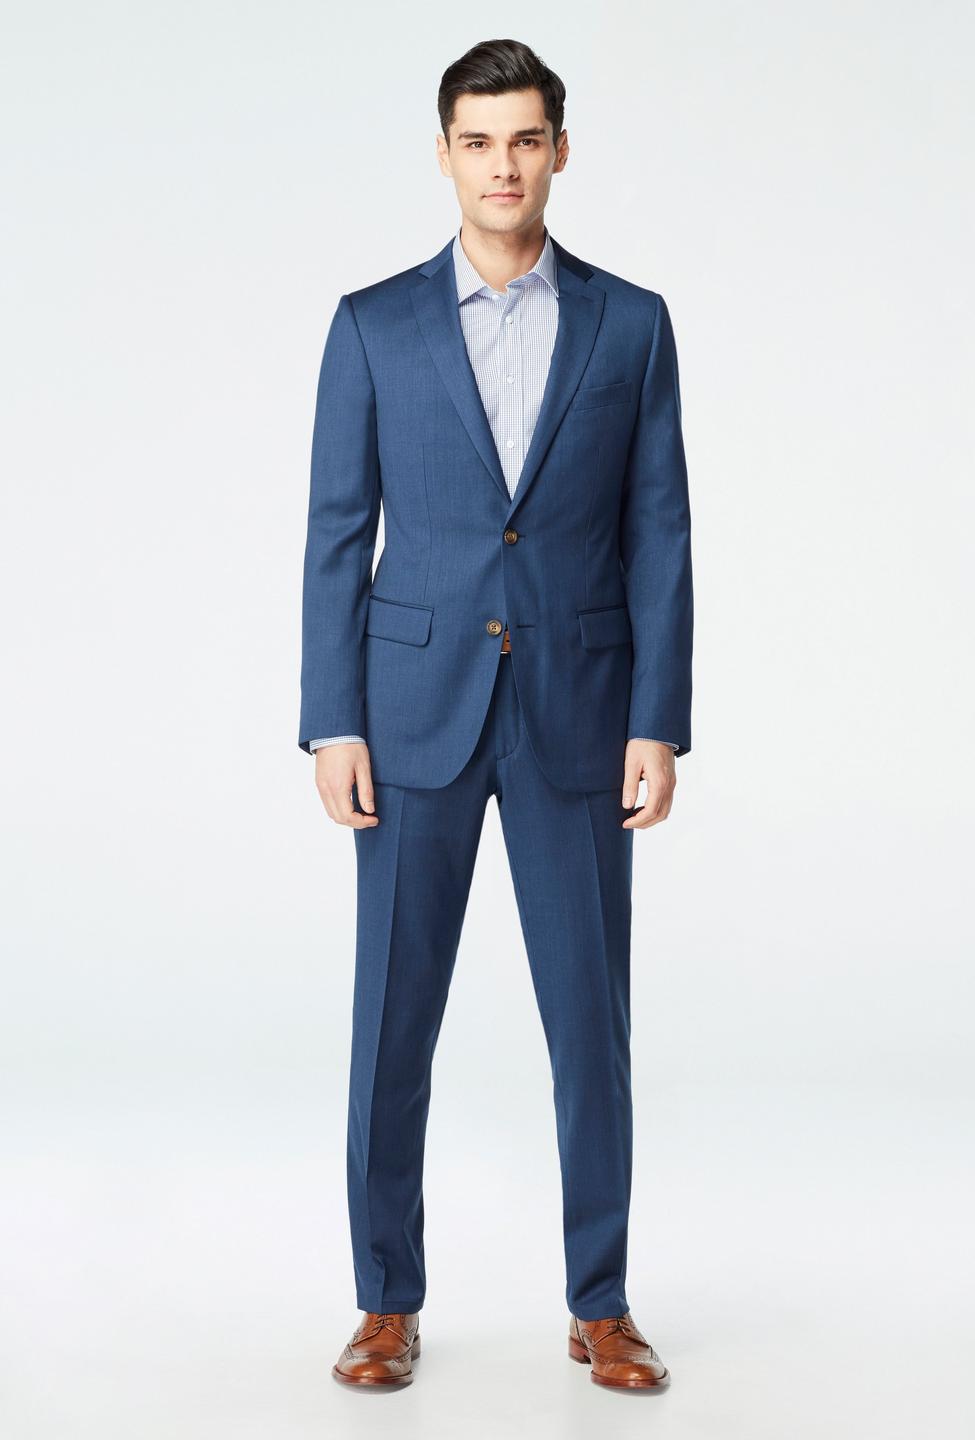 Blue blazer - Hemsworth Solid Design from Premium Indochino Collection